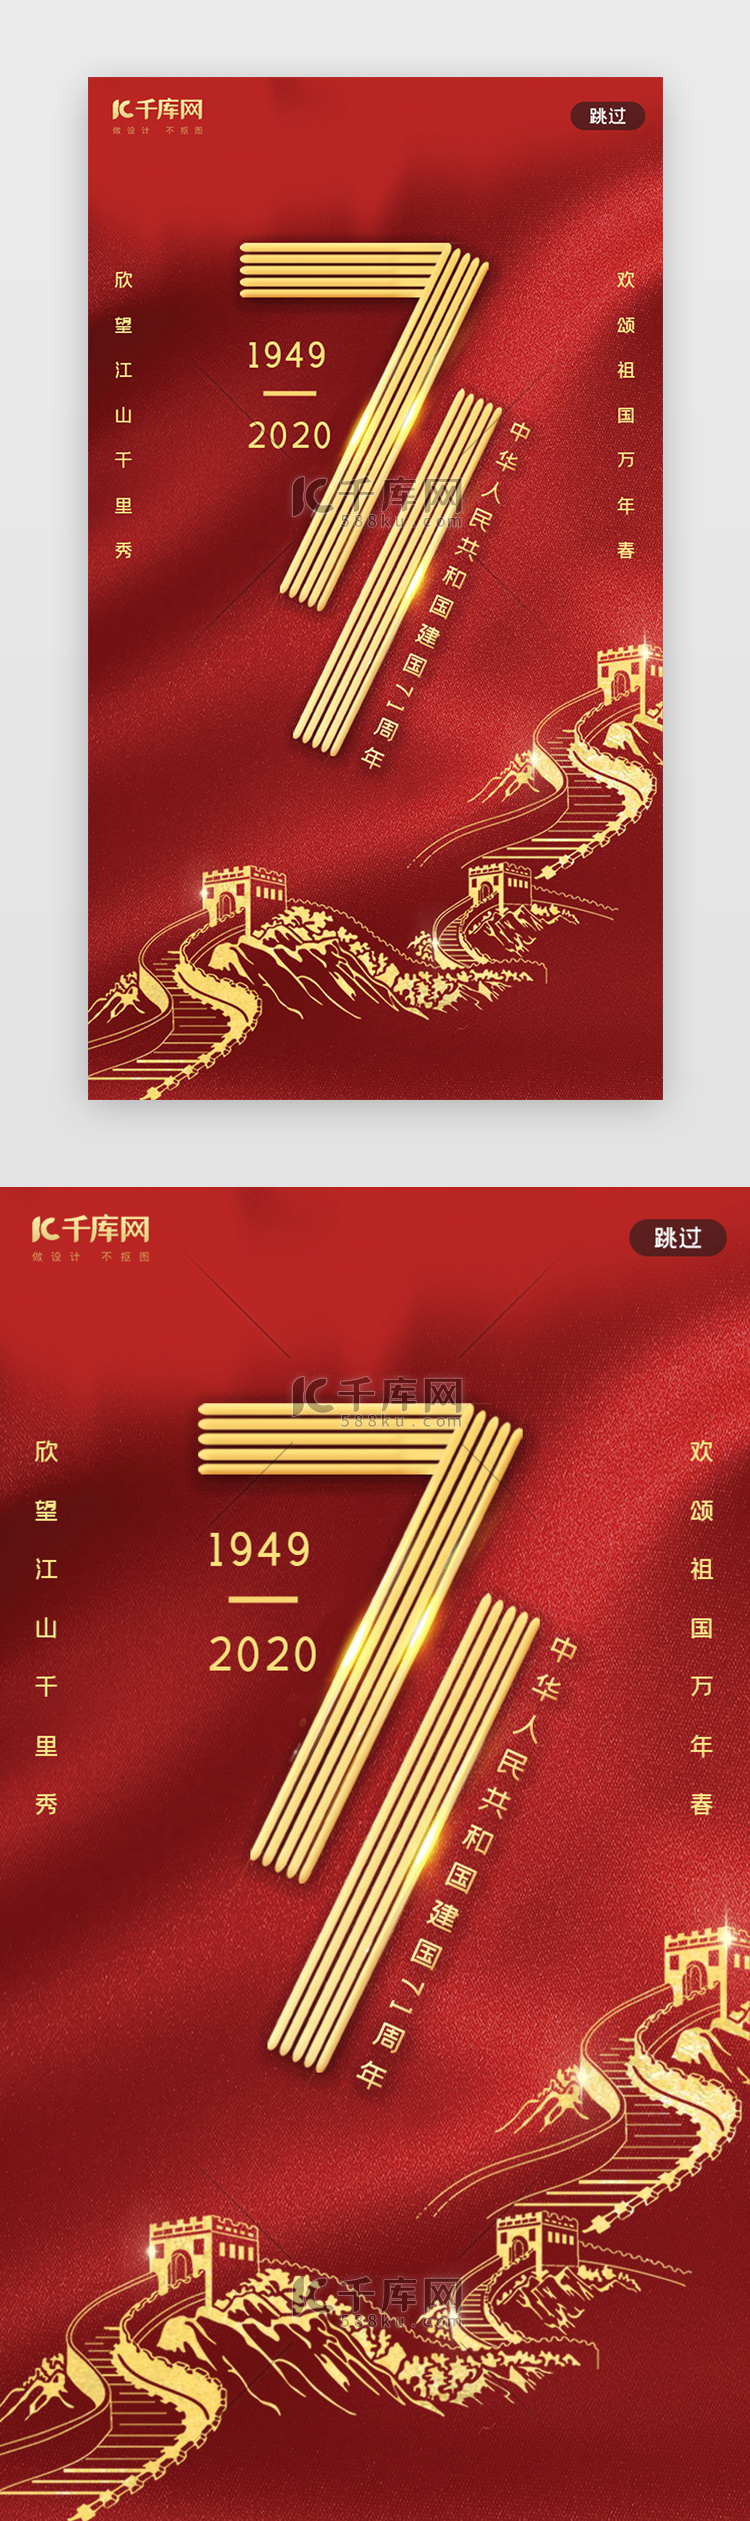 红色国庆节建国71周年闪屏